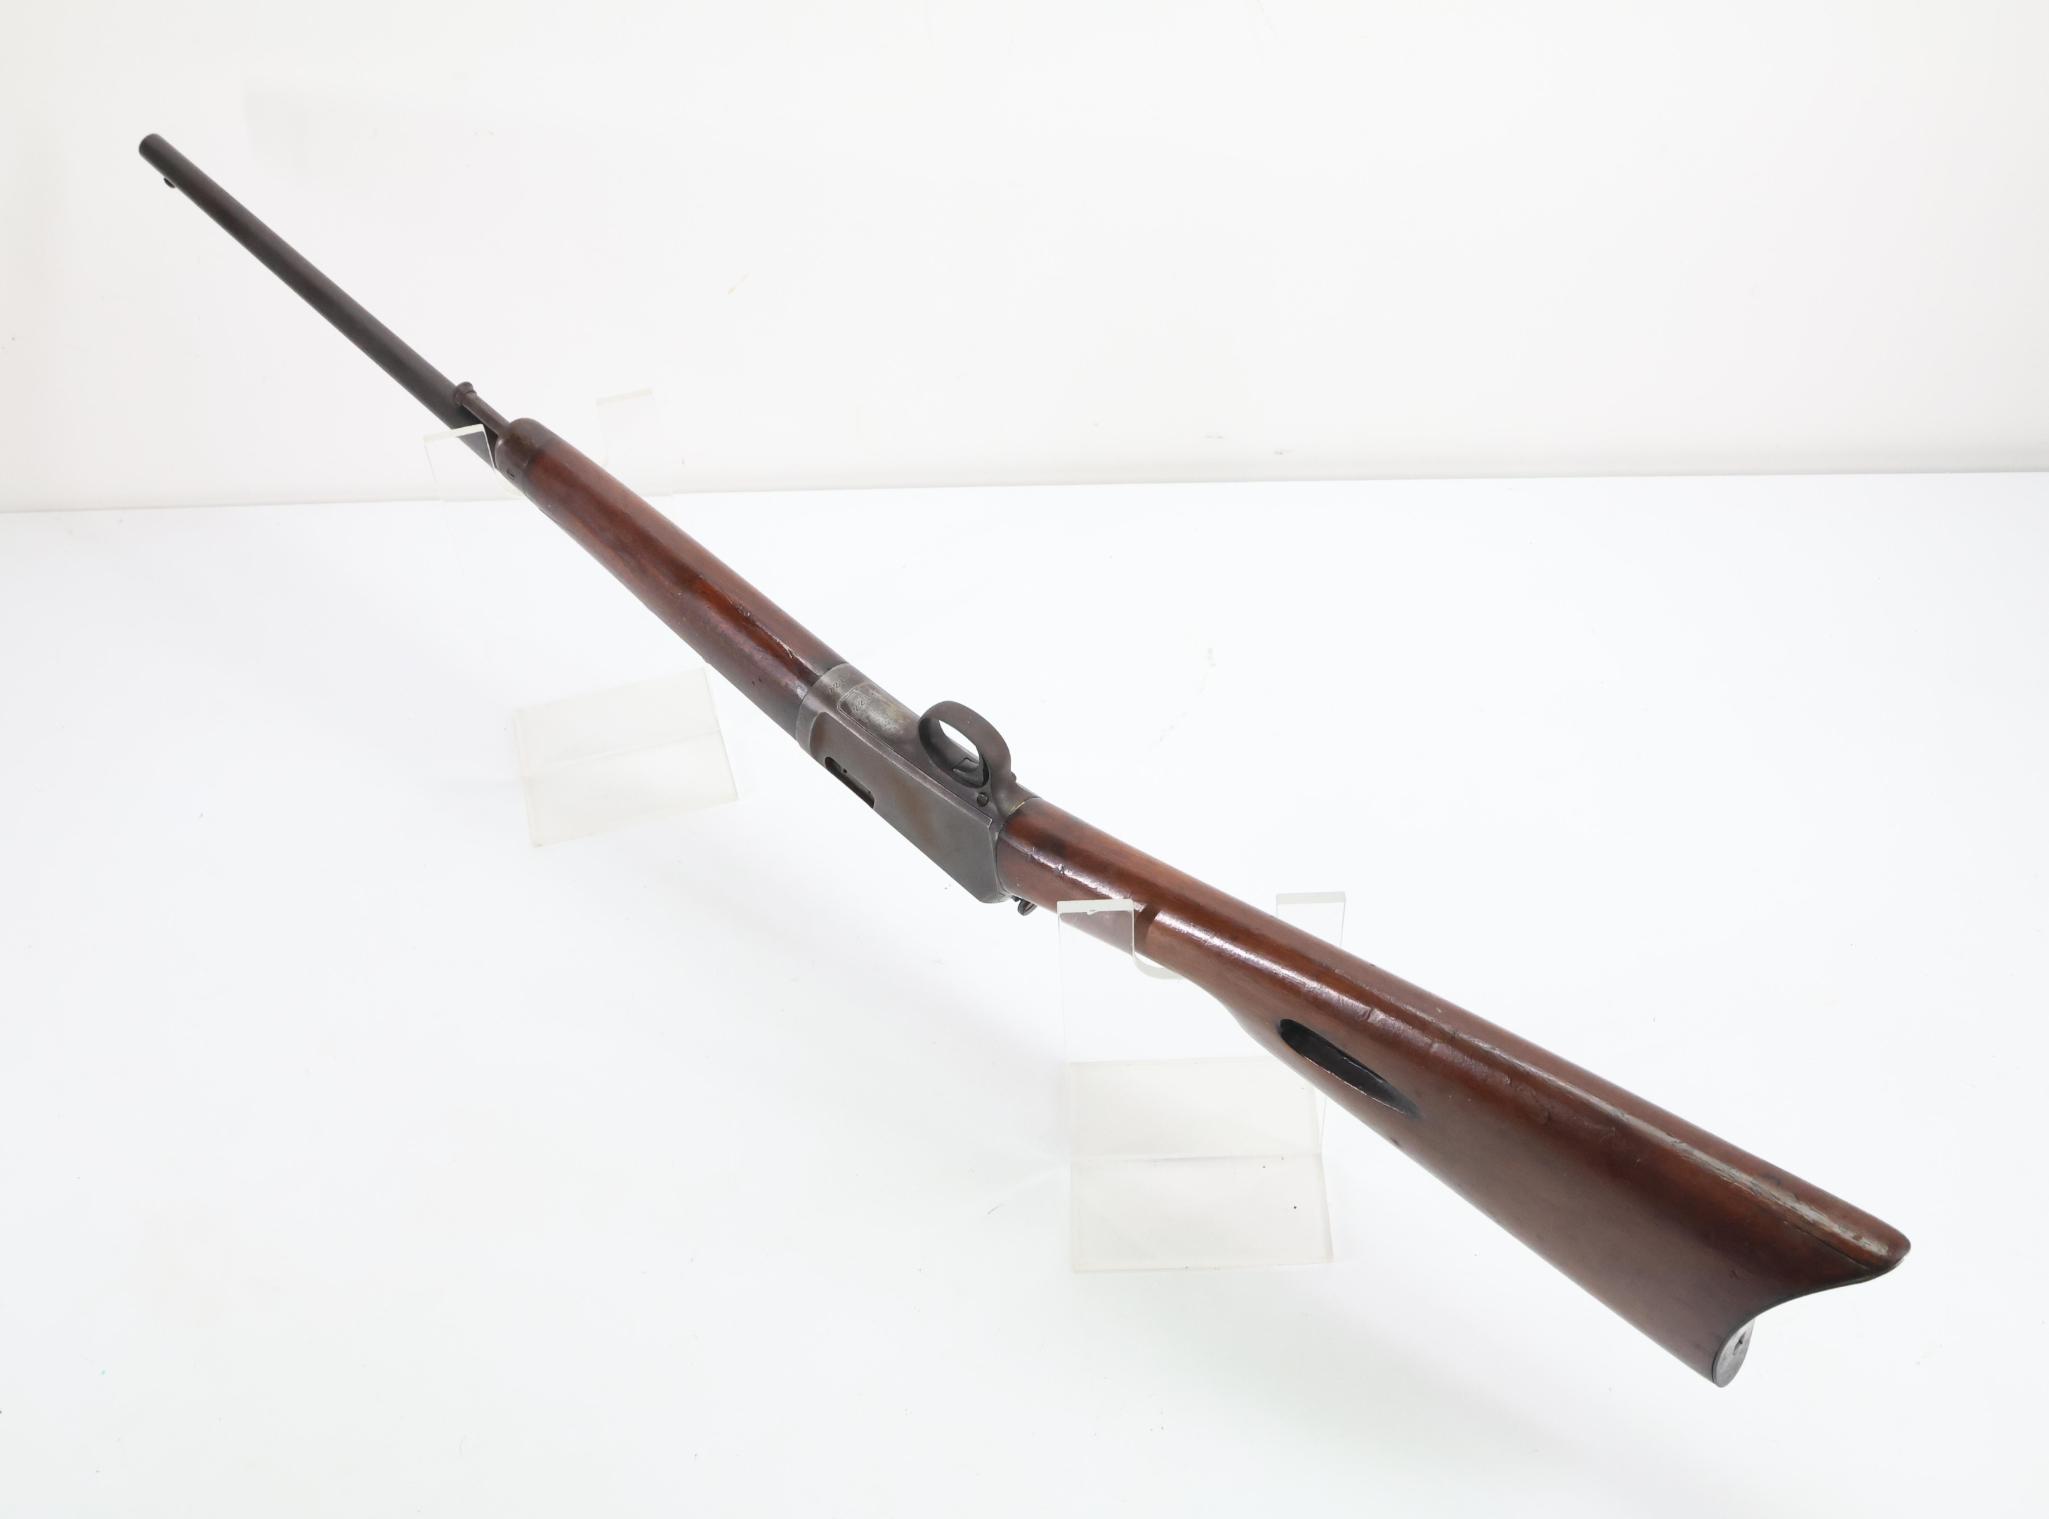 Winchester Model 1903 Semi Automatic Rifle